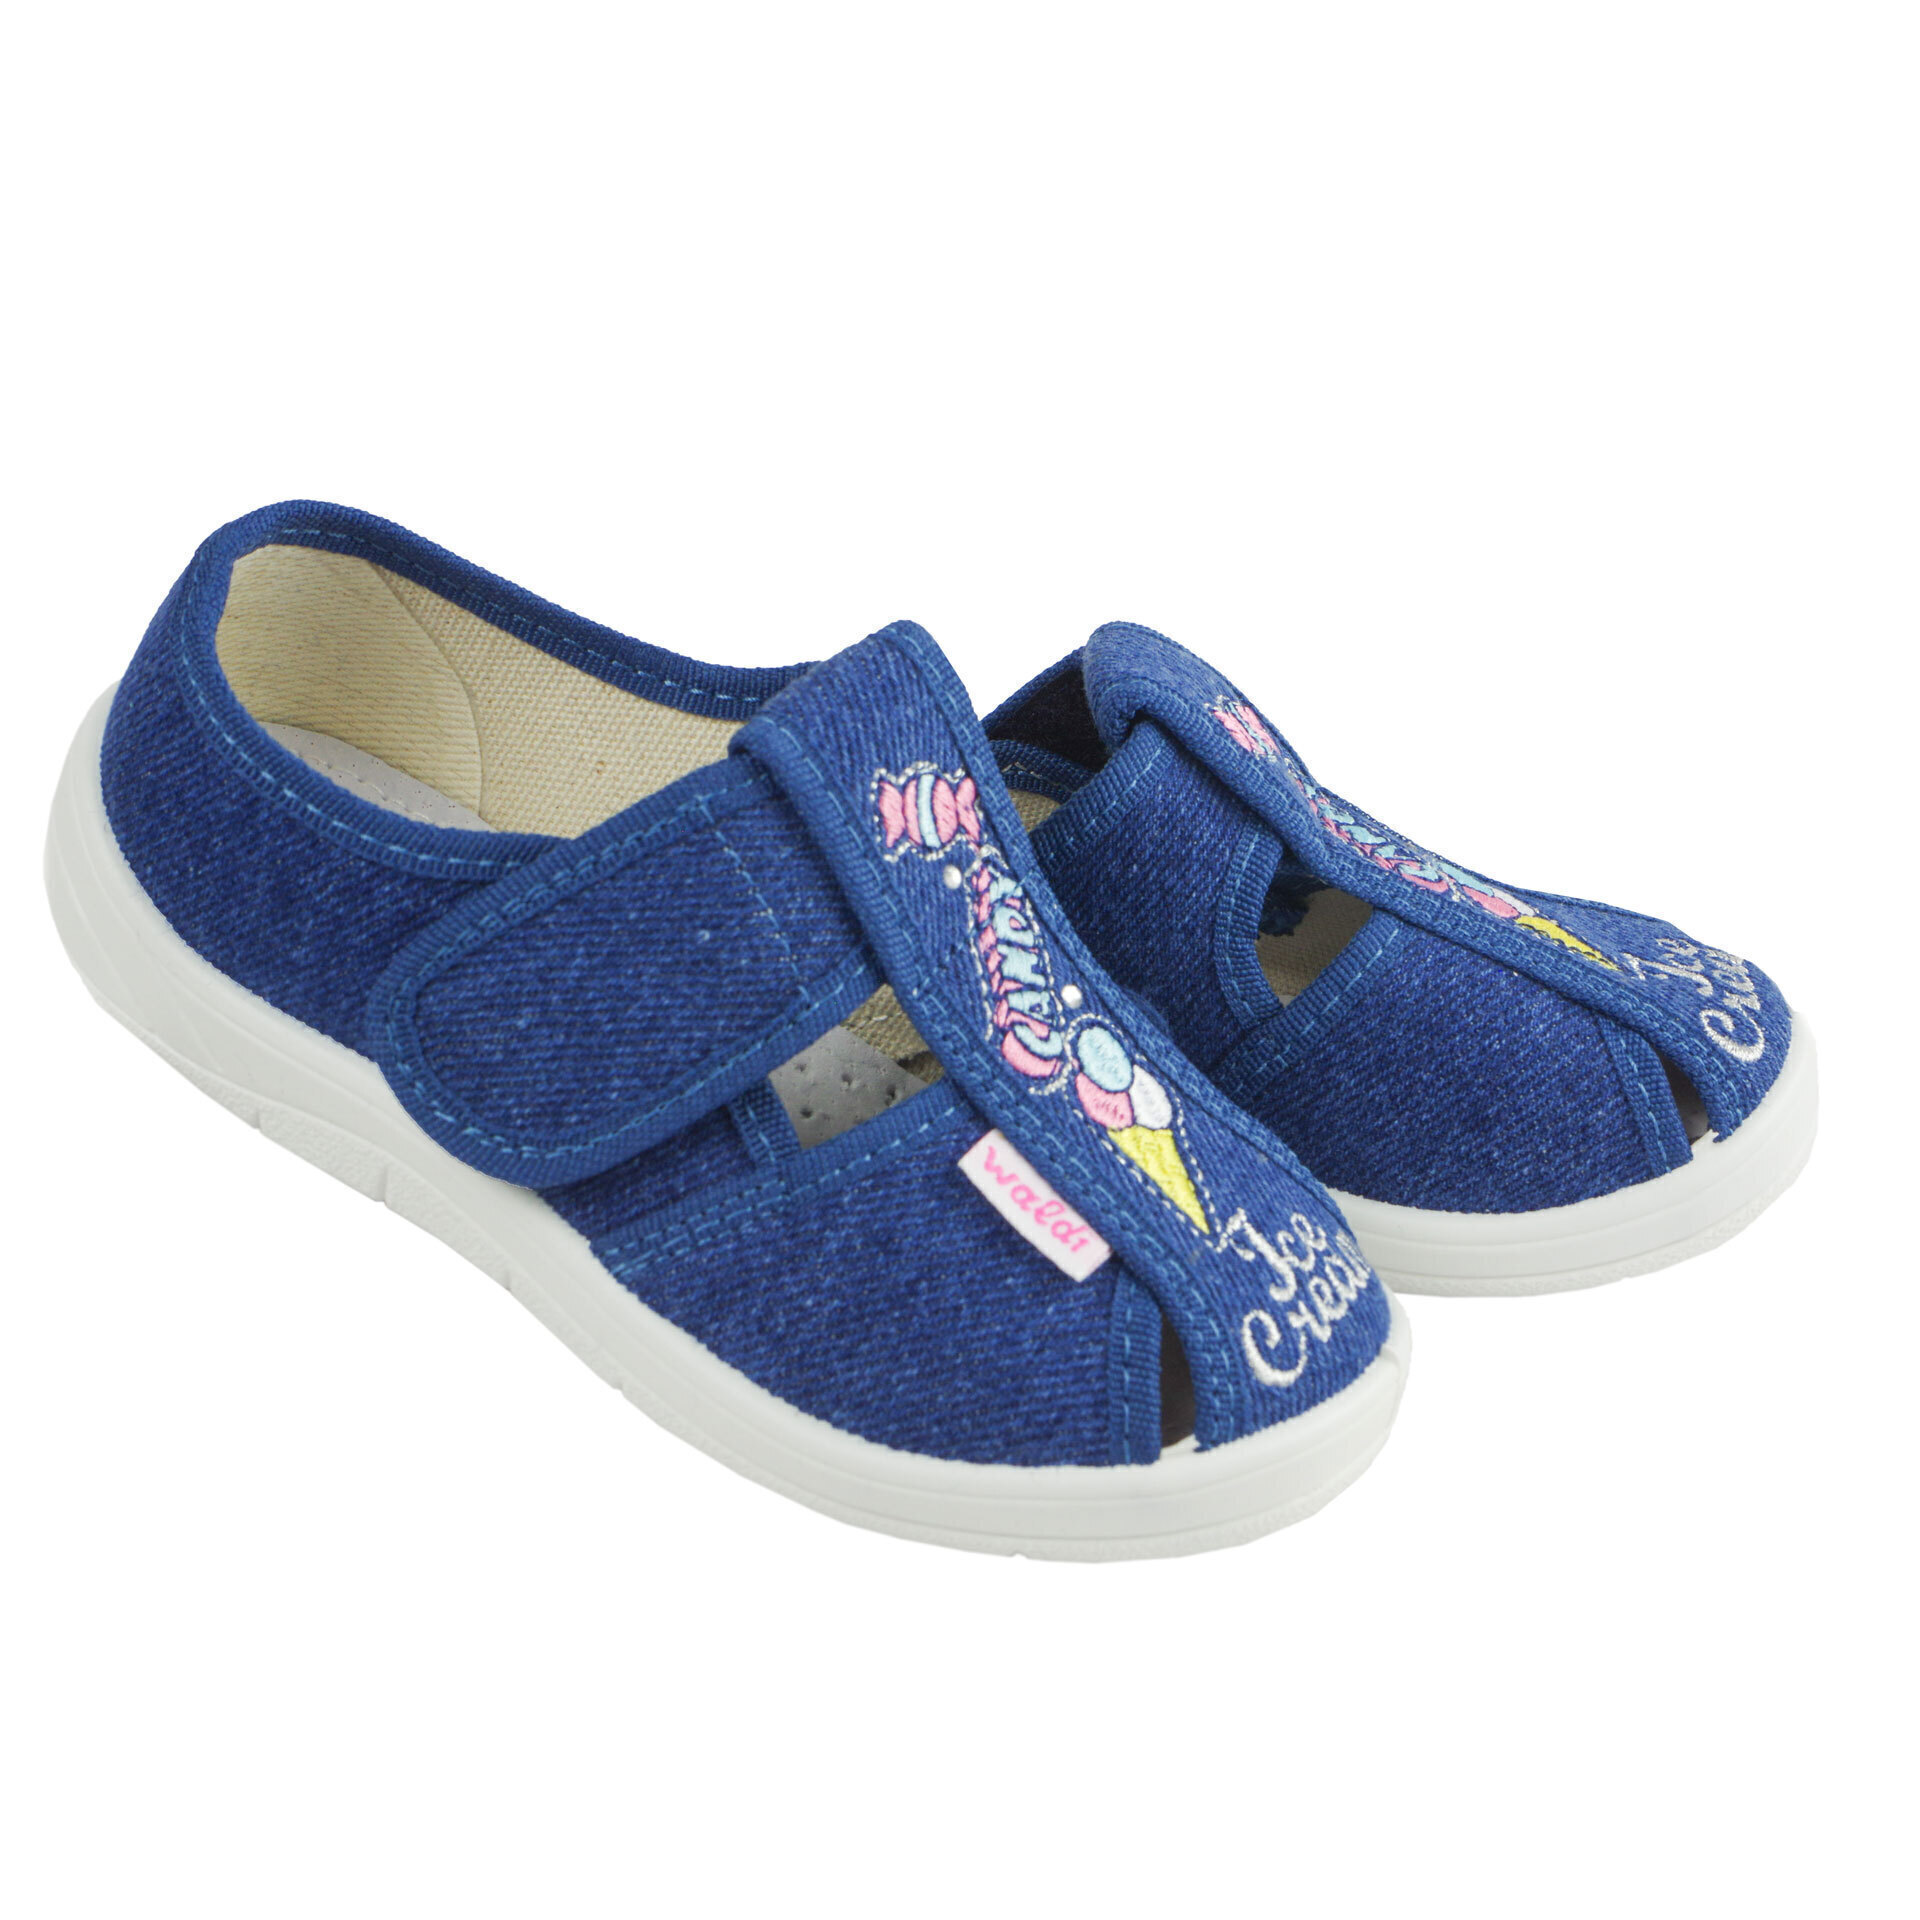 Текстильная обувь для девочек Тапочки Джинс (2040) цвет Синий 24-30 размеры – Sole Kids. Фото 2